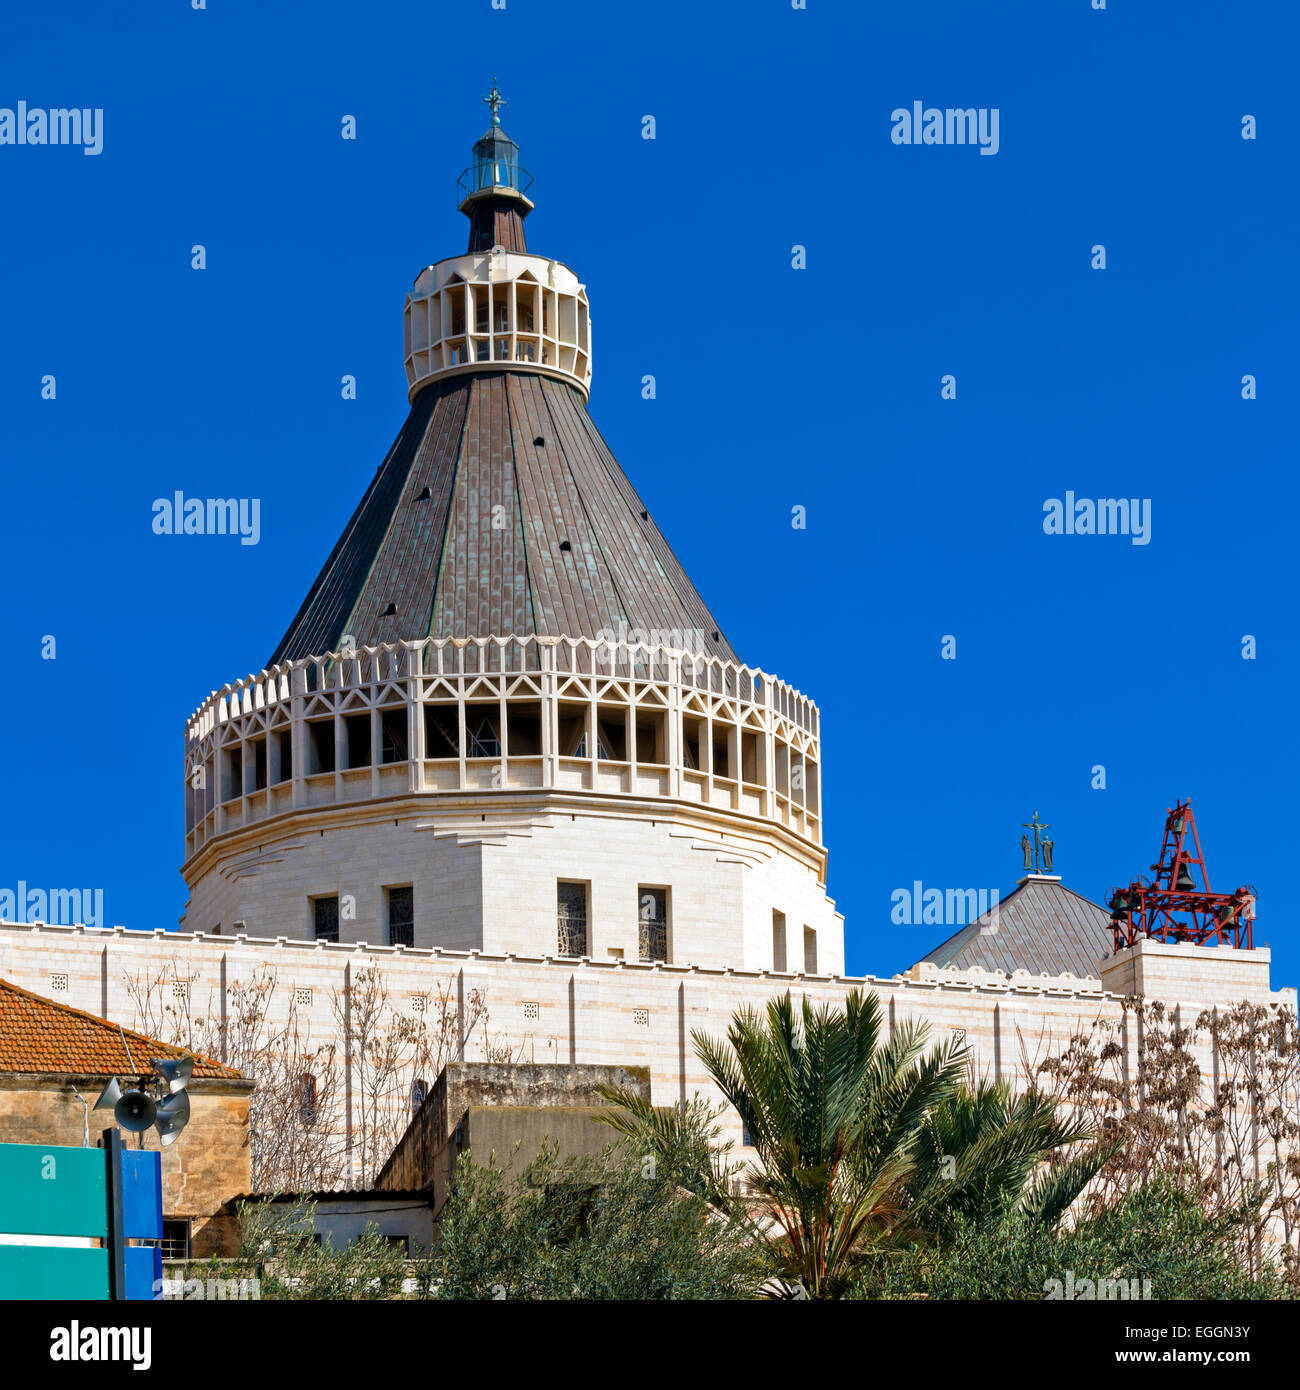 Façade de la cathédrale de l'Annonciation à Nazareth, Israël Banque D'Images